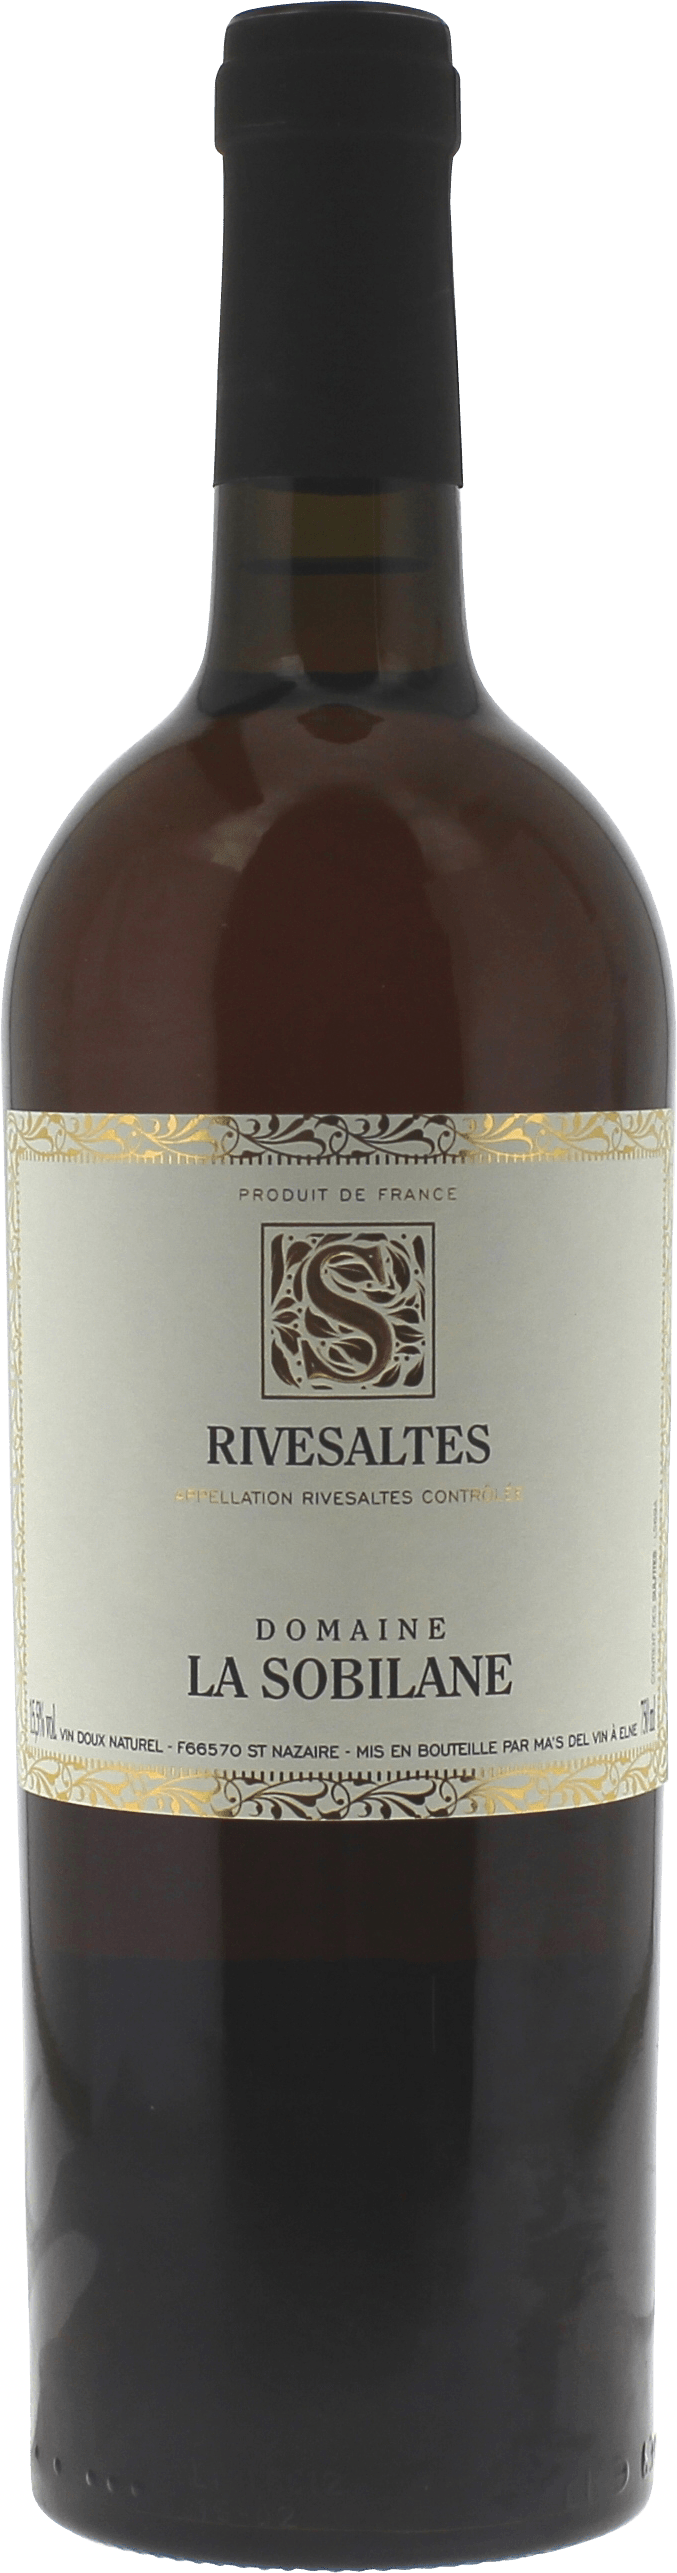 Rivesaltes domaine la sobilane 1961 Vin doux naturel Rivesaltes, Vin doux naturel